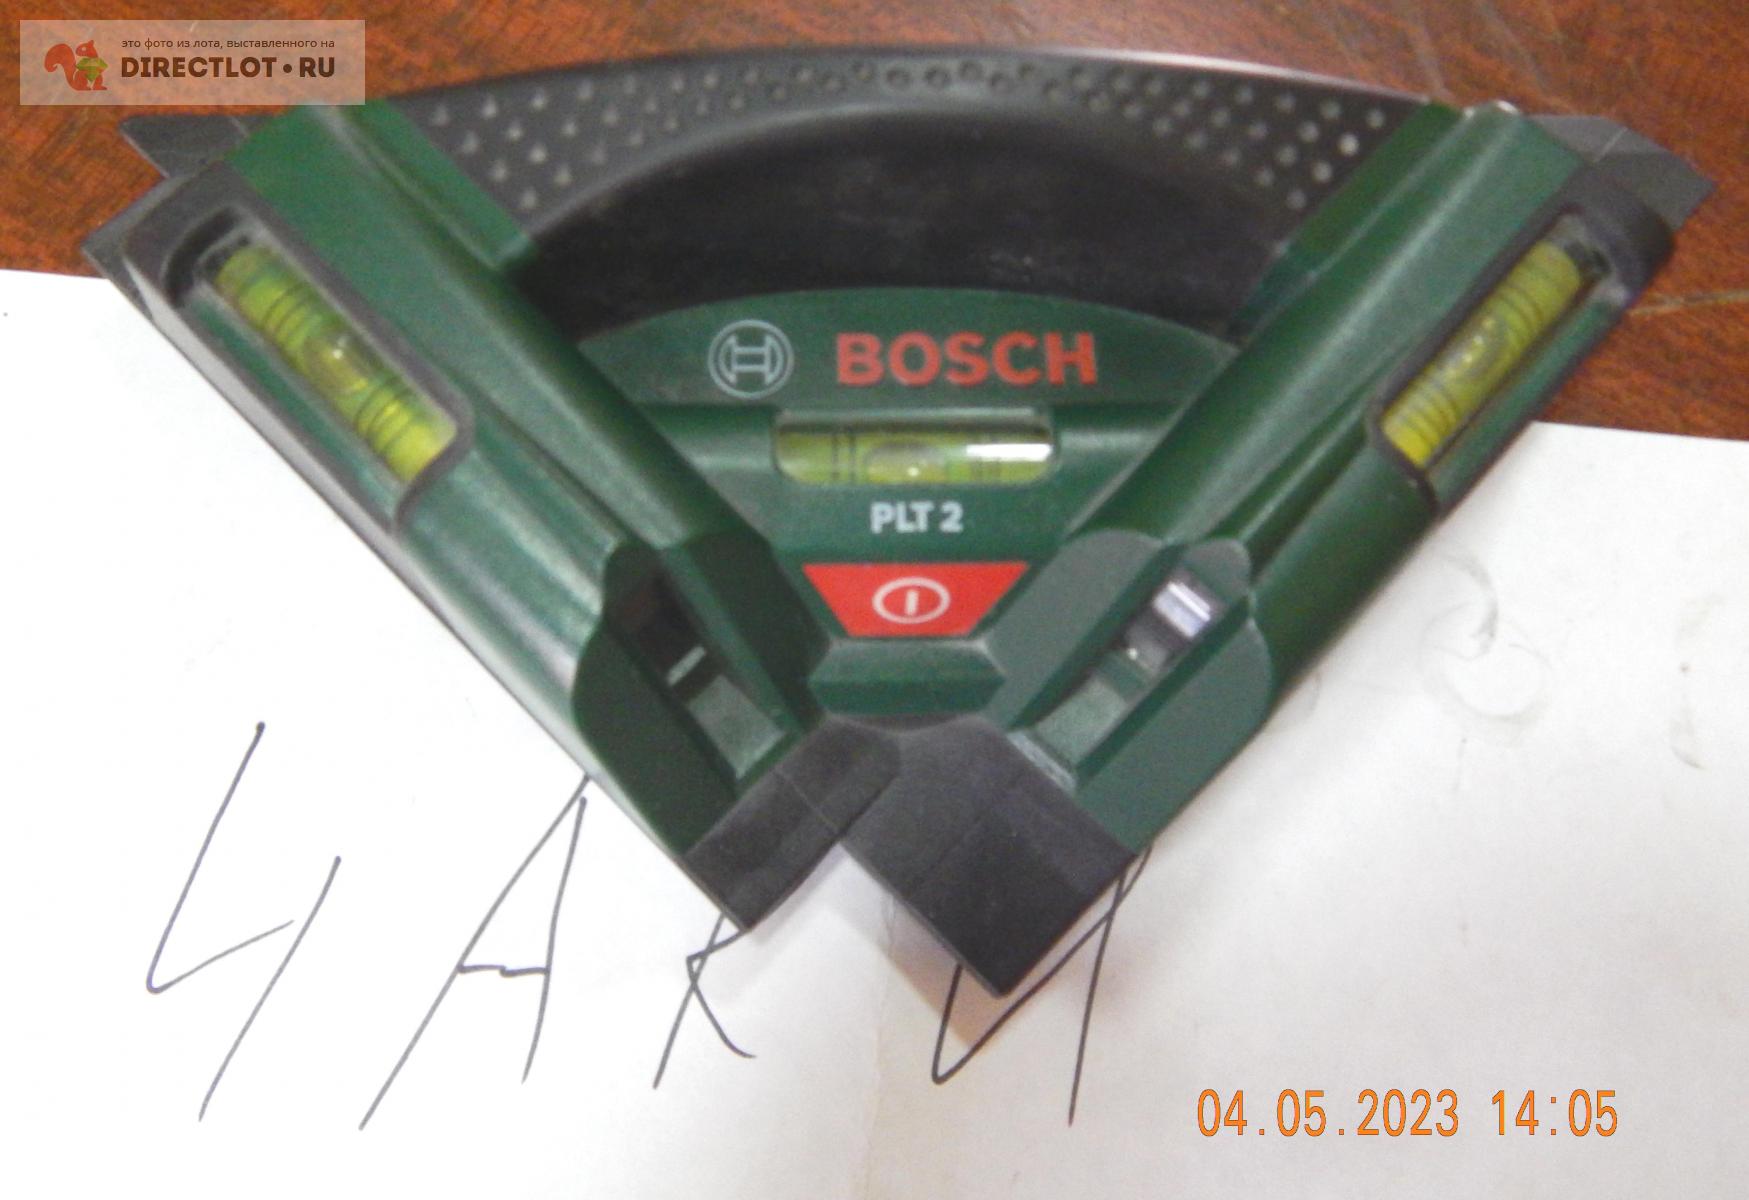 Лазерный уровень bosch PLT 2 для плитки  в Салавате цена 1100 Р .